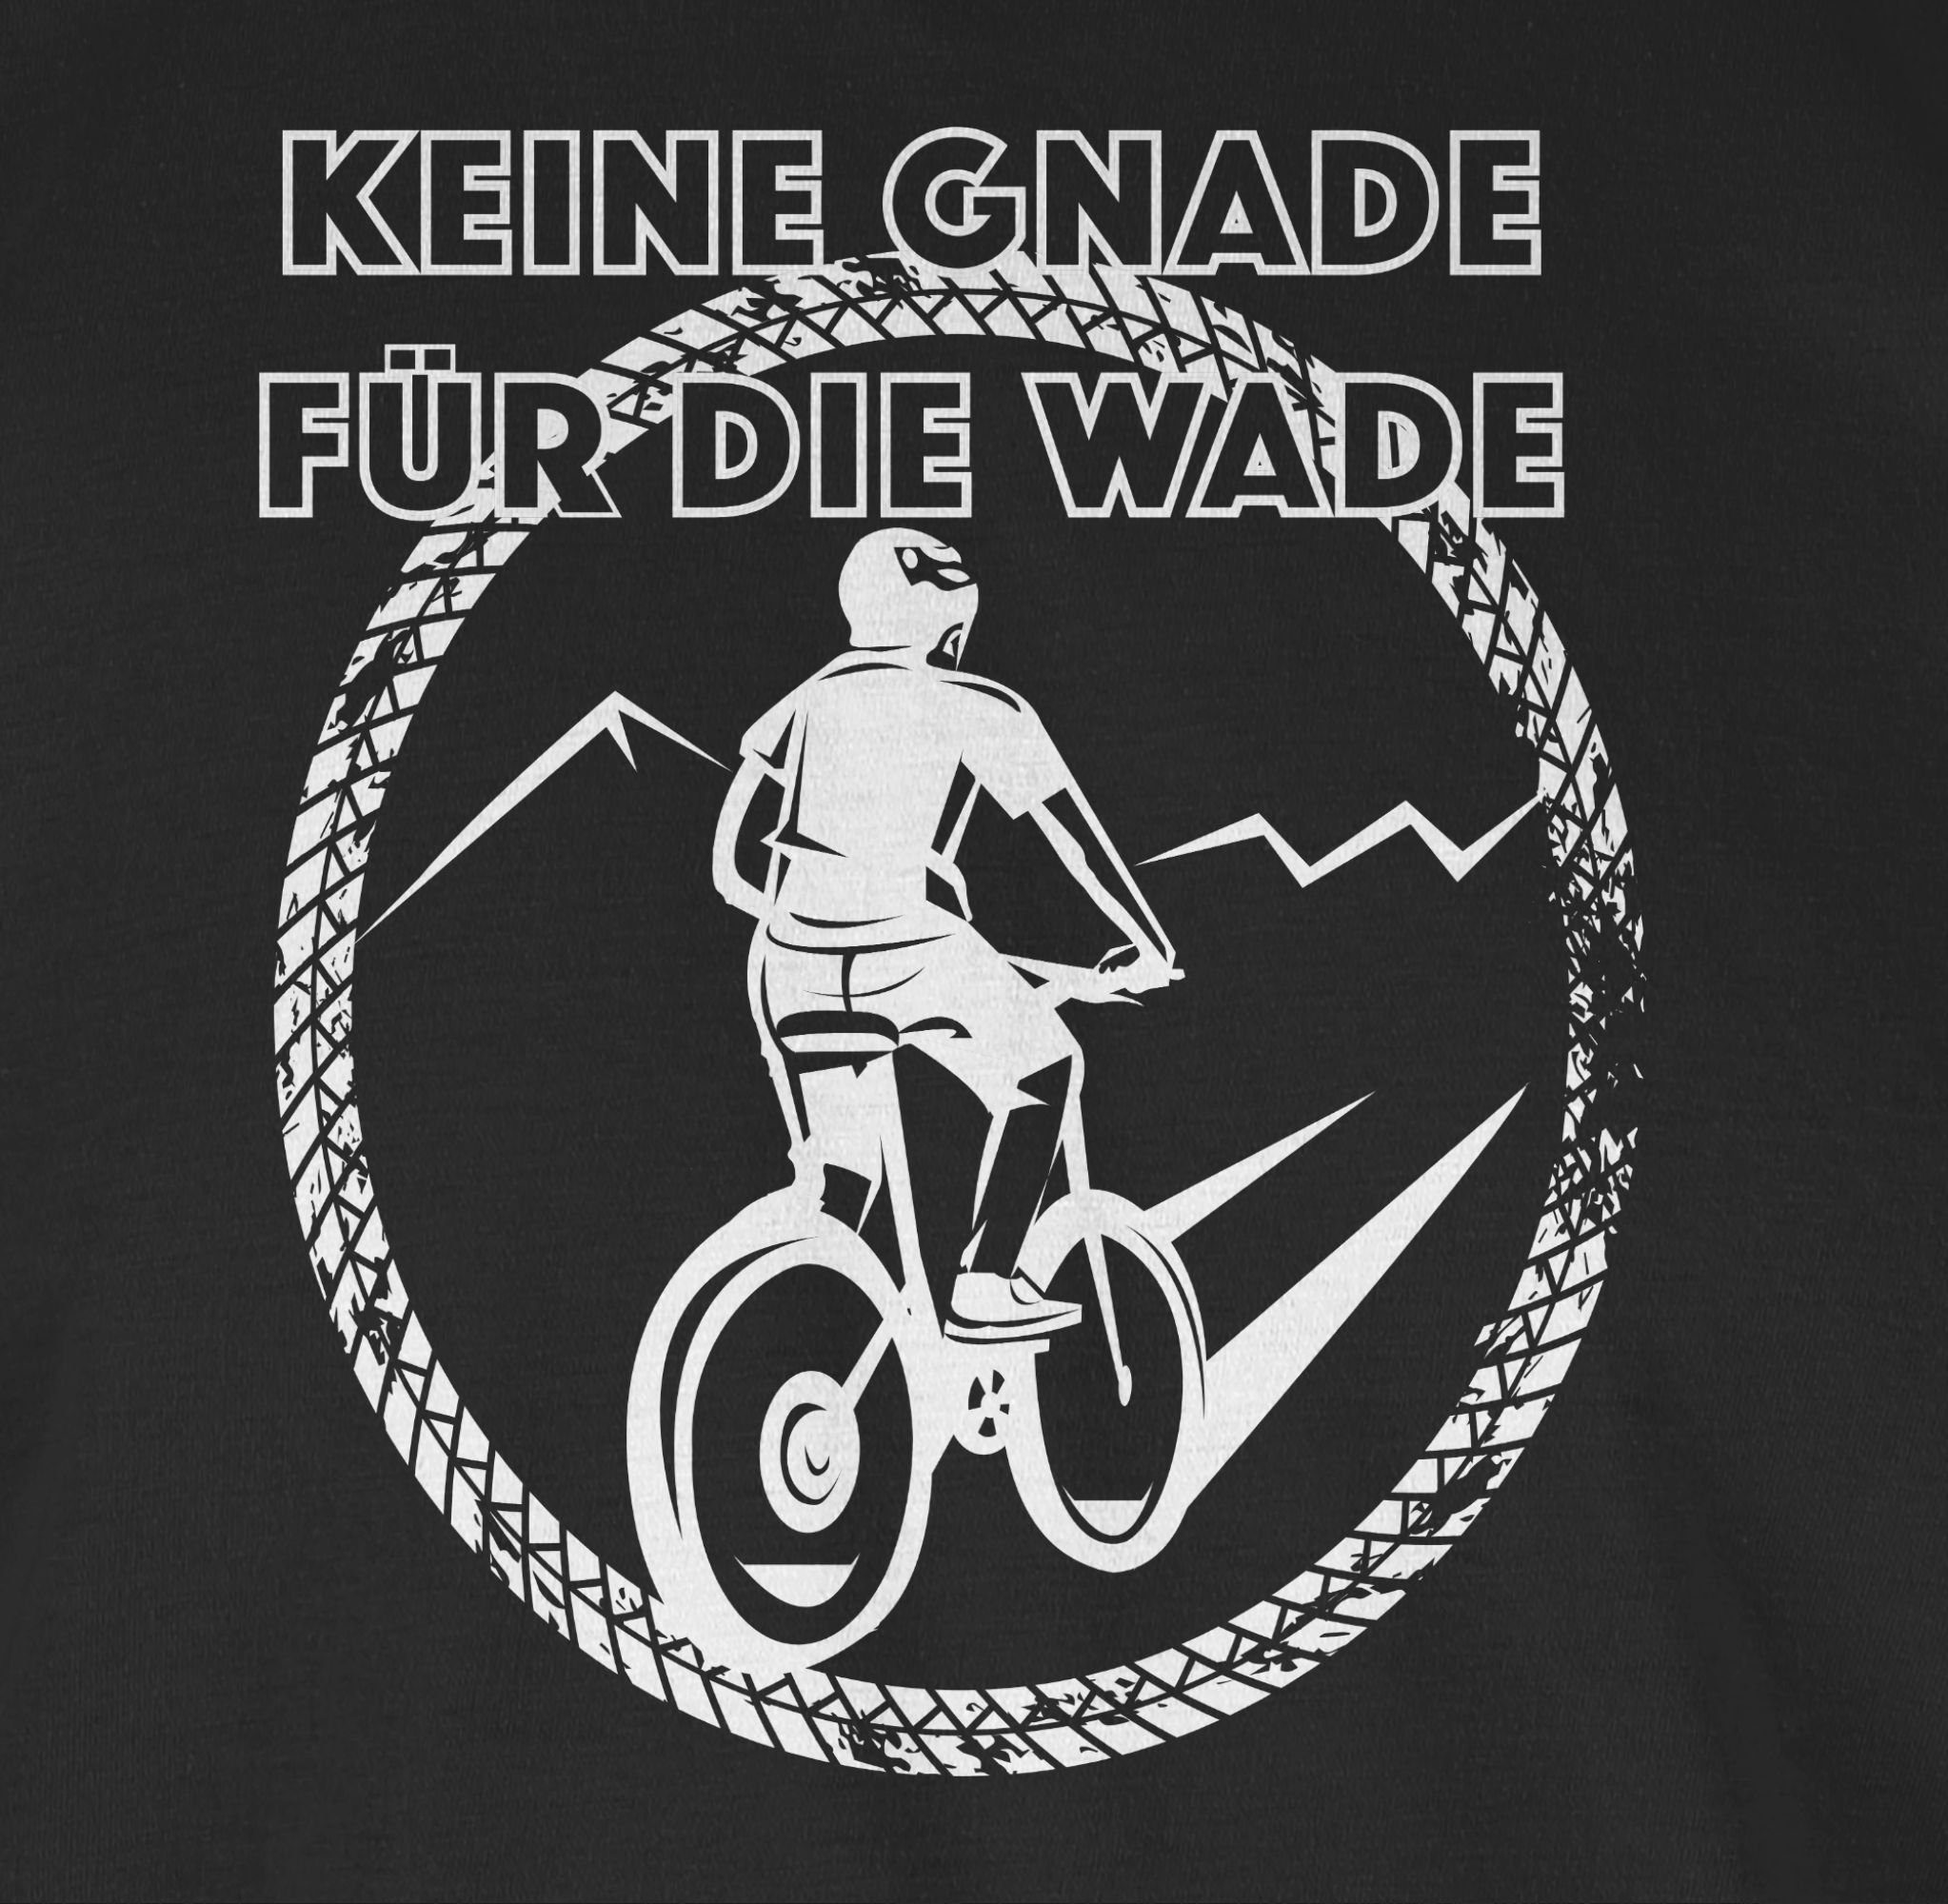 Shirtracer Gnade für Schwarz Bekleidung die Fahrrad Wade 1 Radsport T-Shirt Keine